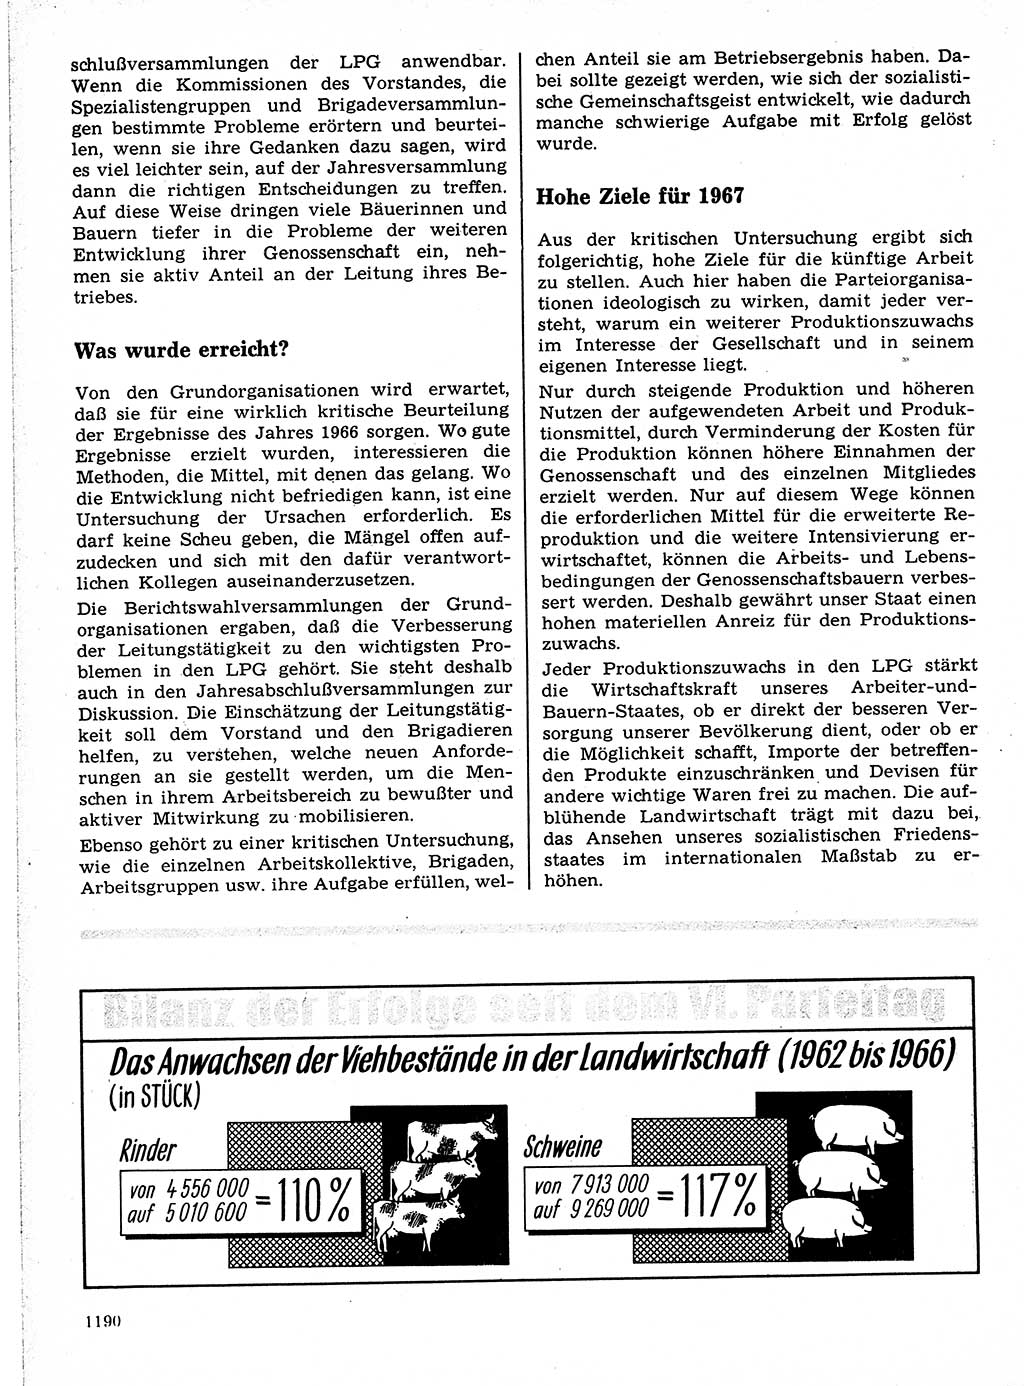 Neuer Weg (NW), Organ des Zentralkomitees (ZK) der SED (Sozialistische Einheitspartei Deutschlands) für Fragen des Parteilebens, 21. Jahrgang [Deutsche Demokratische Republik (DDR)] 1966, Seite 1190 (NW ZK SED DDR 1966, S. 1190)